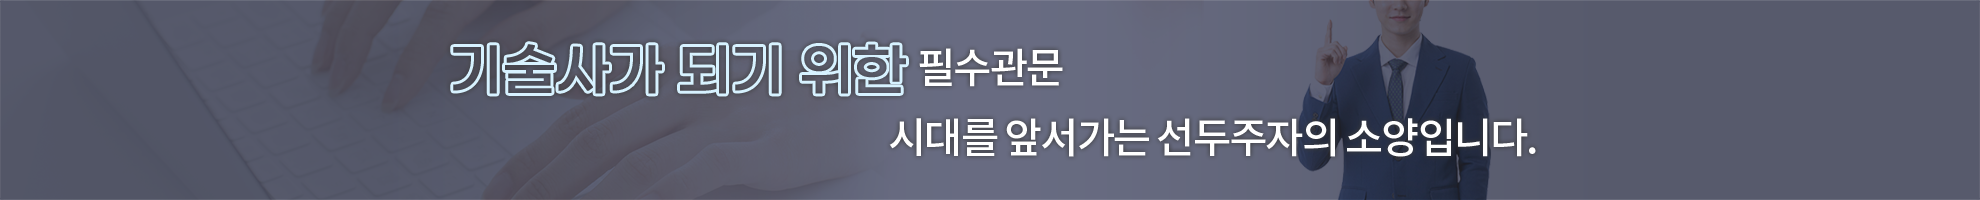 006-전자기학 합격의맥.png